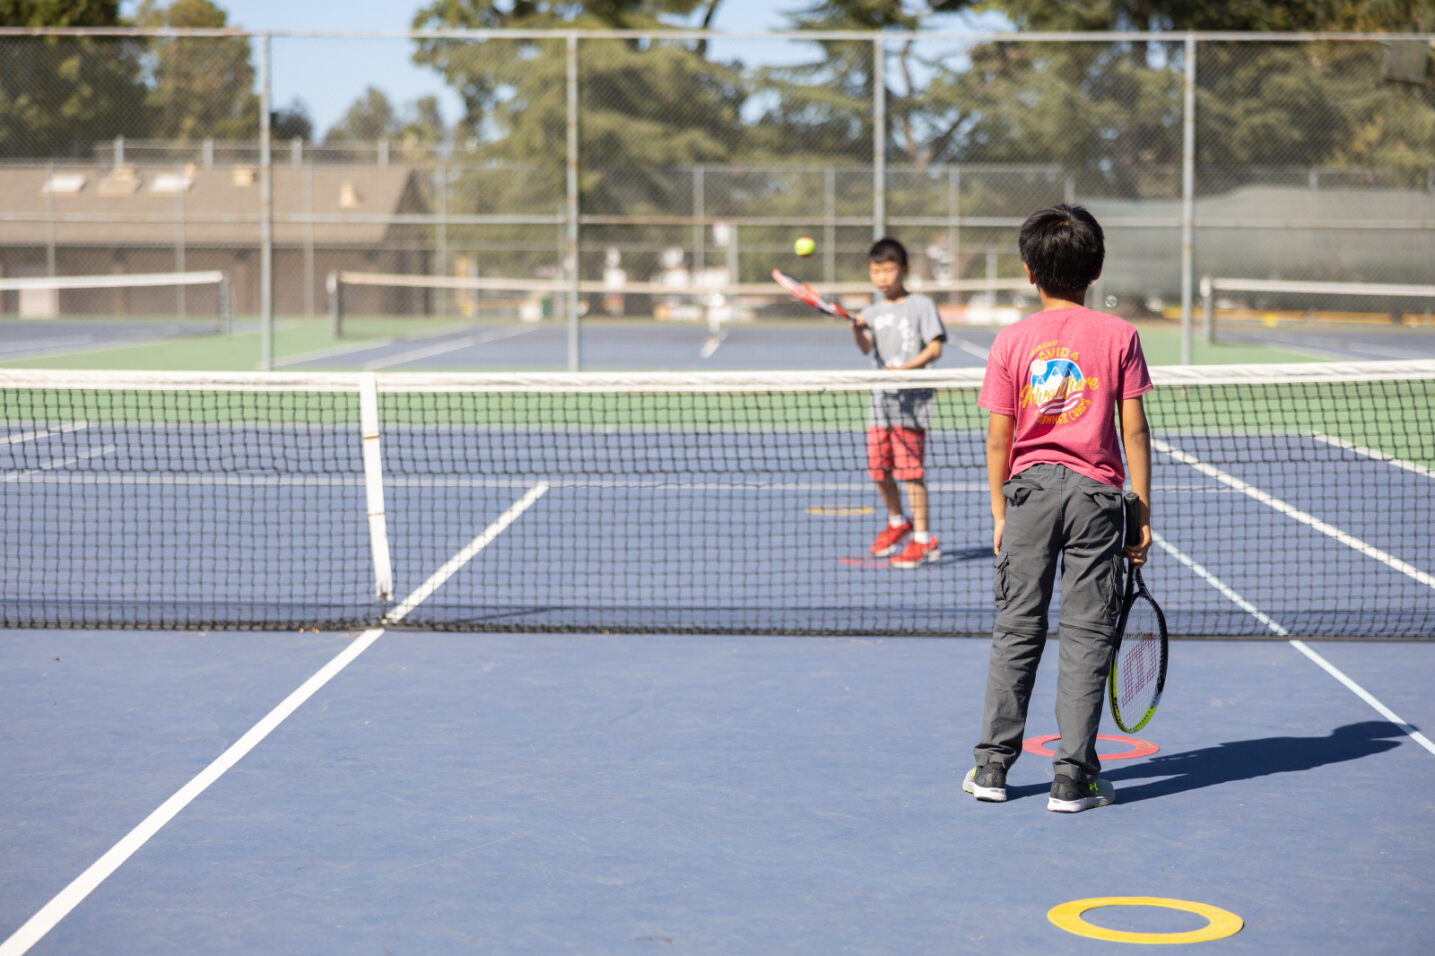 Kids playing tennis games